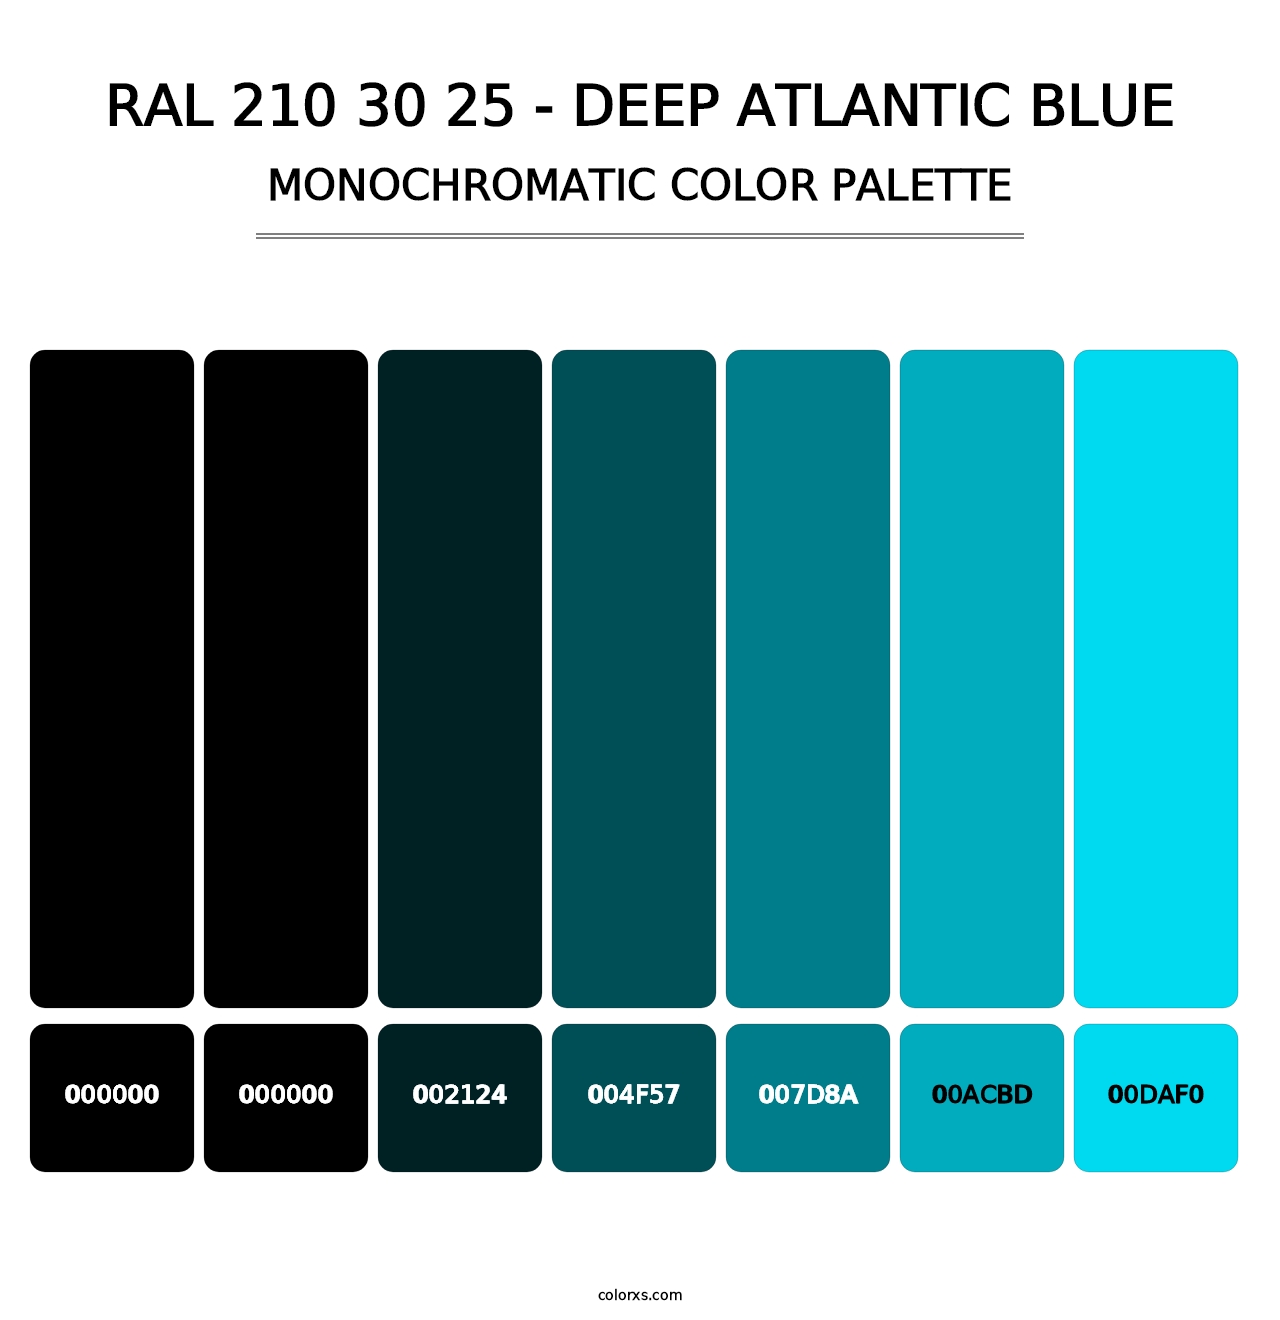 RAL 210 30 25 - Deep Atlantic Blue - Monochromatic Color Palette